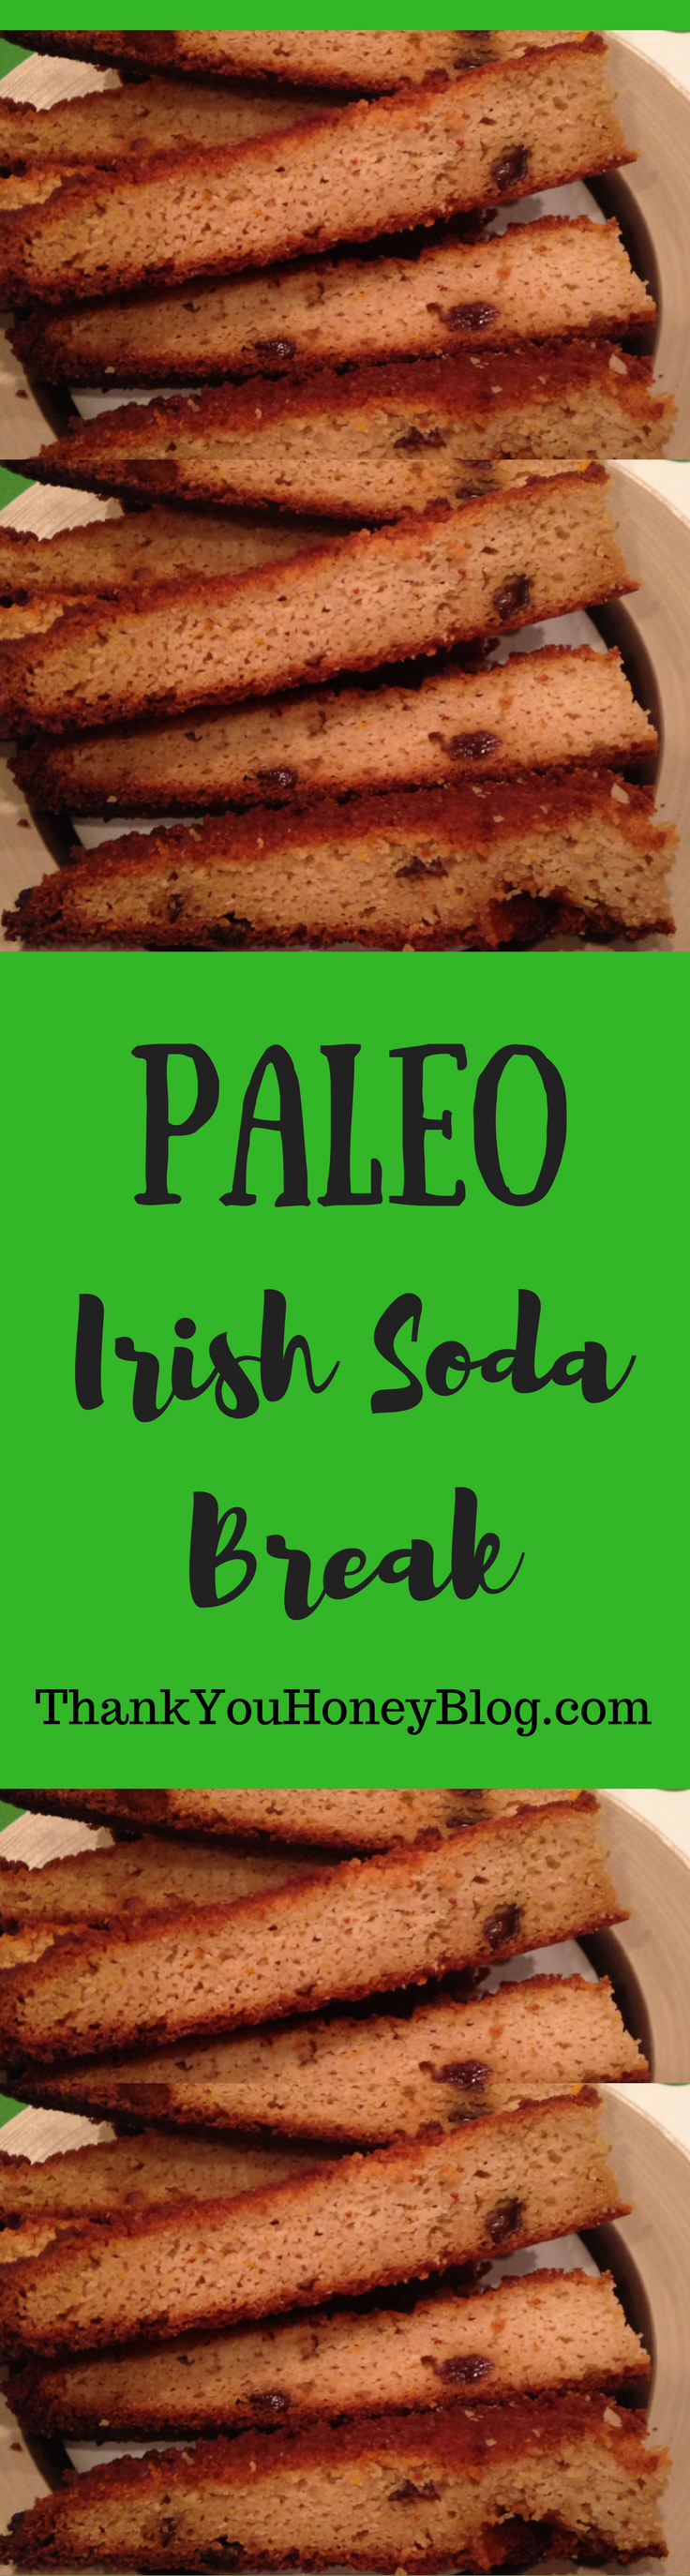 Paleo Irish Soda Bread